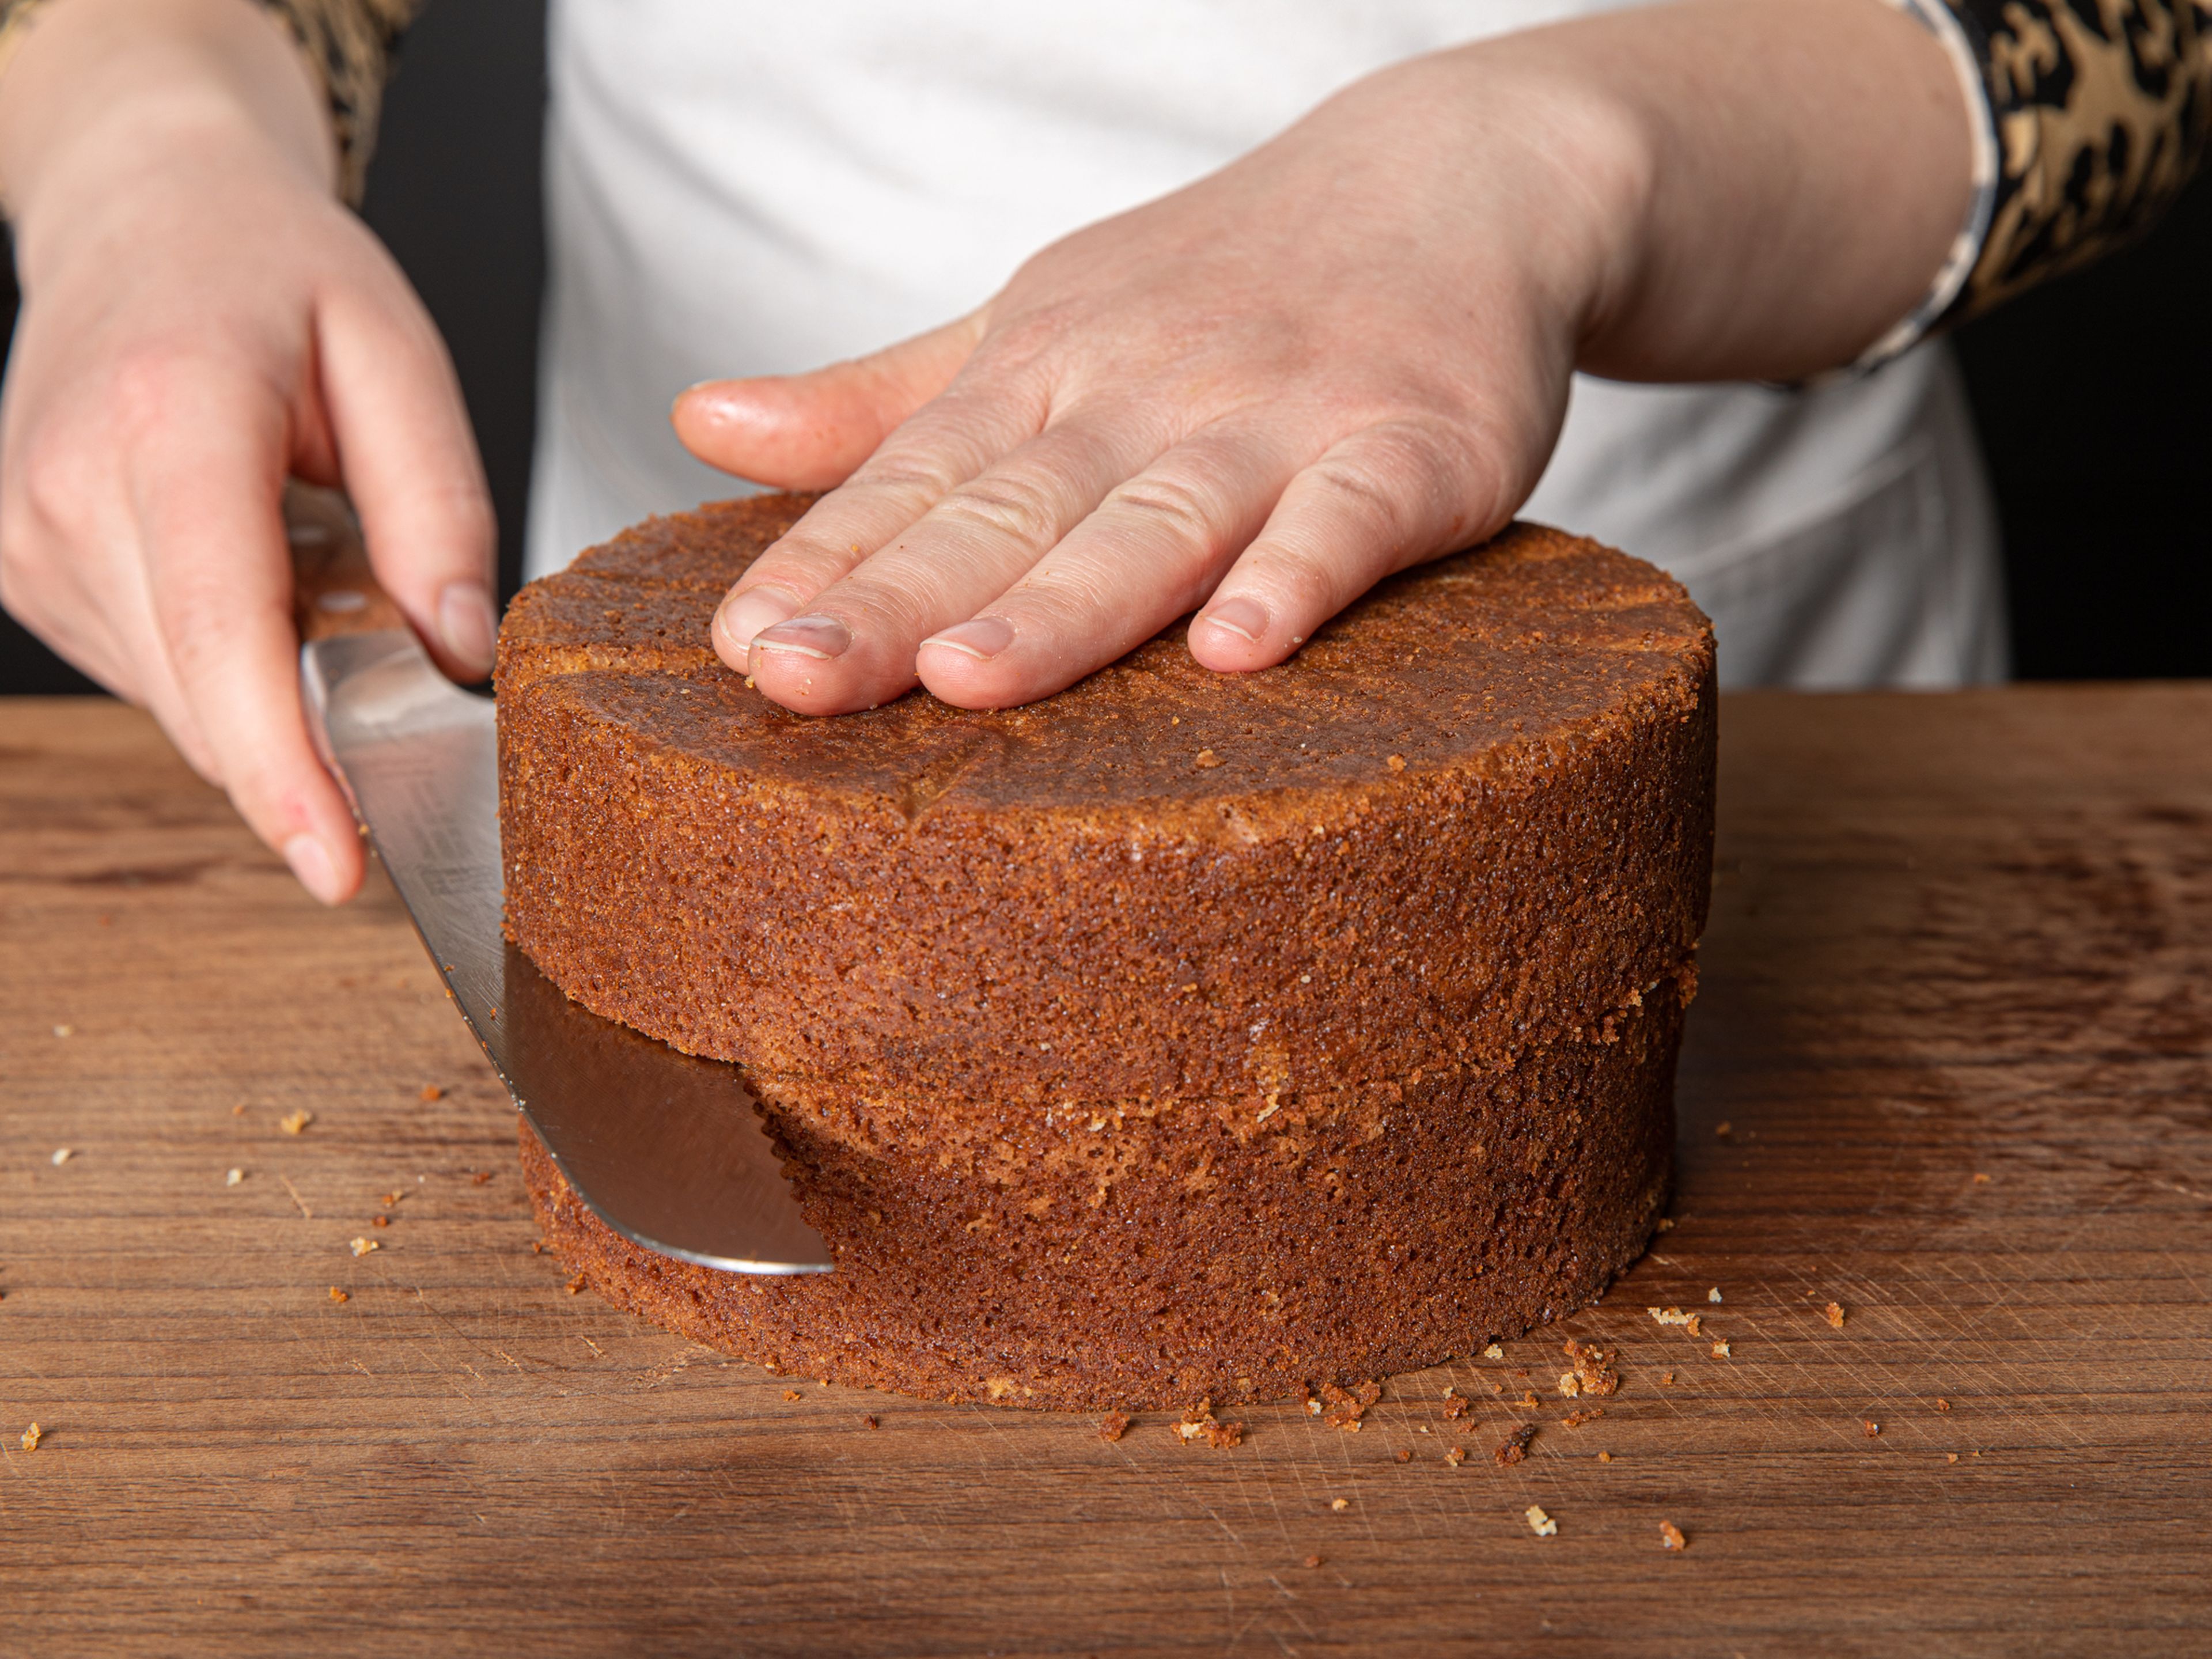 Wenn der Kuchen komplett abgekühlt ist, vorsichtig aus der Form lösen. Wenn der obere Teil nicht komplett gerade ist, mit einem Brotmesser glatt abschneiden. Nun den Boden längs halbieren, so dass zwei gleichmäßige Böden entstehen.